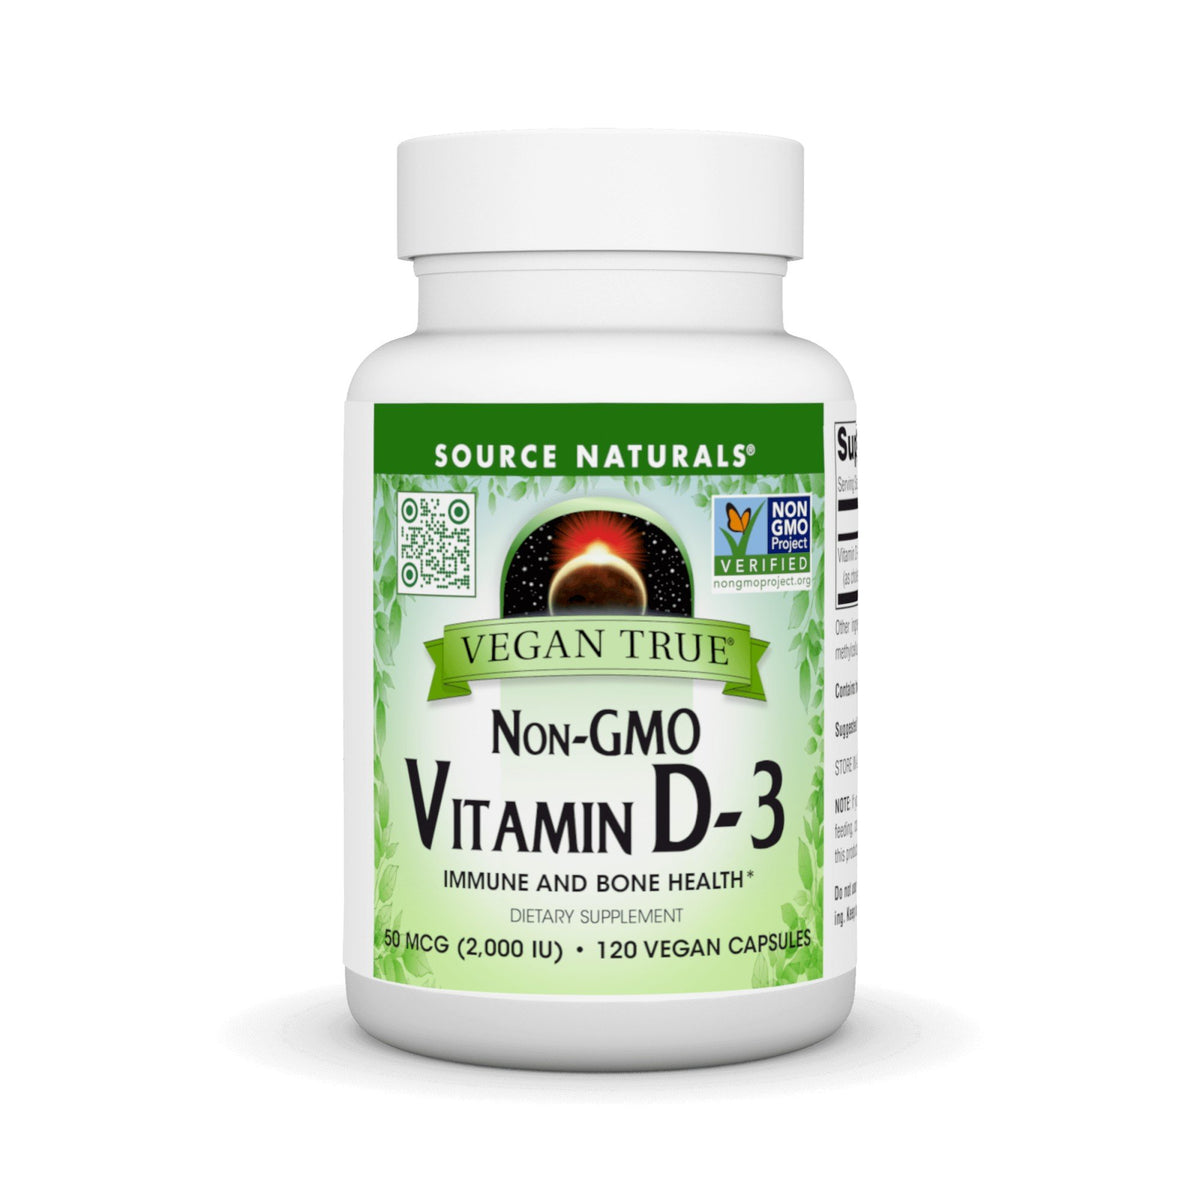 Source Naturals, Inc. Vegan True Non-GMO Vitamin D-3 2,000 IU 120 VegCap